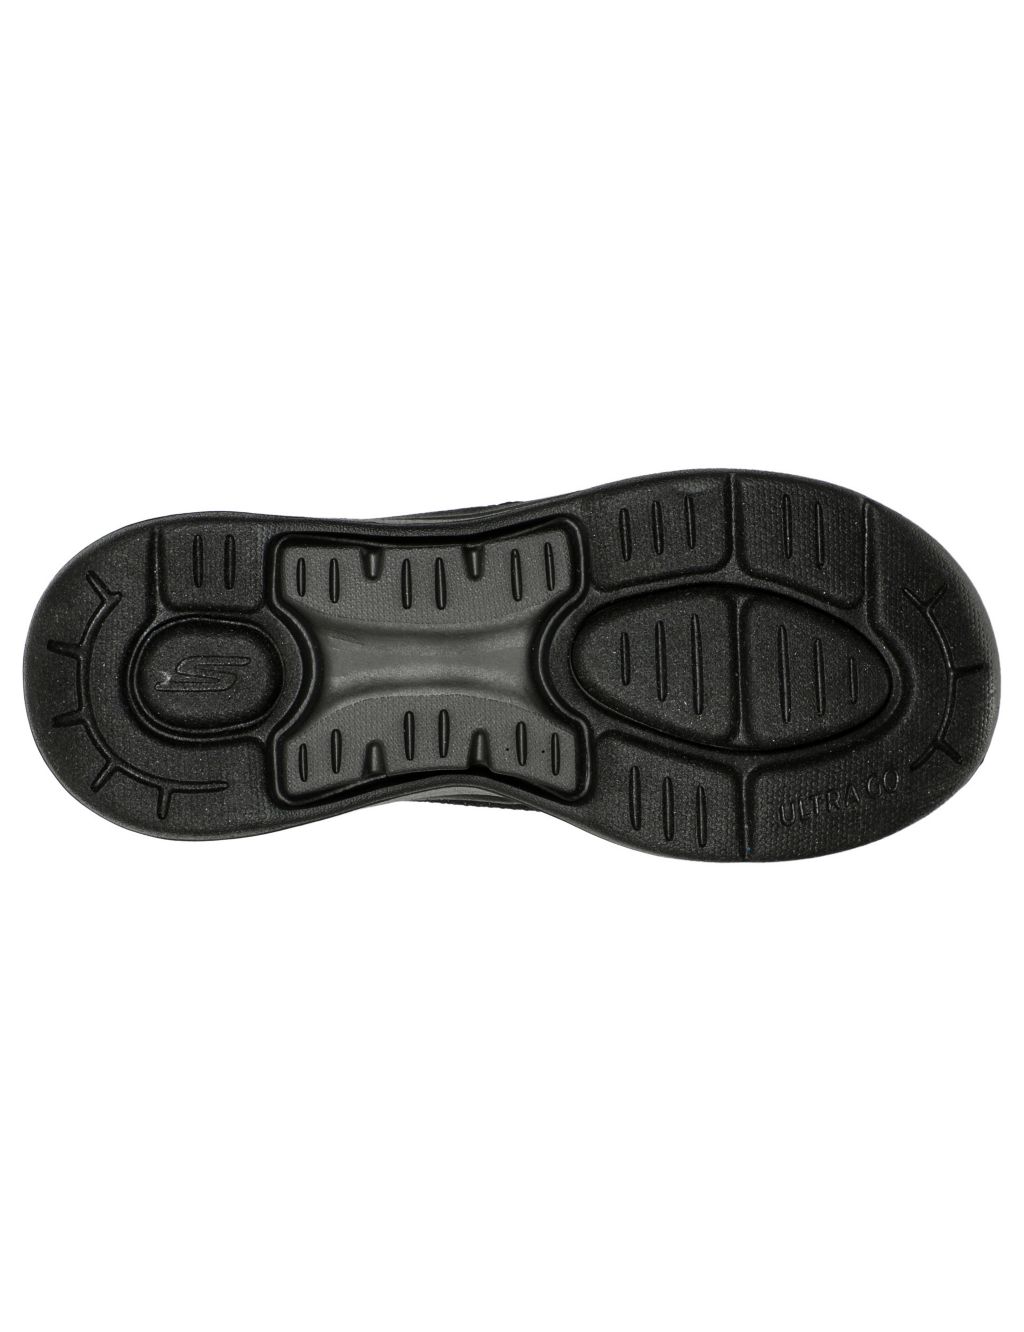 Go Walk Arch Fit Sandal Luminous Flip Flops image 4